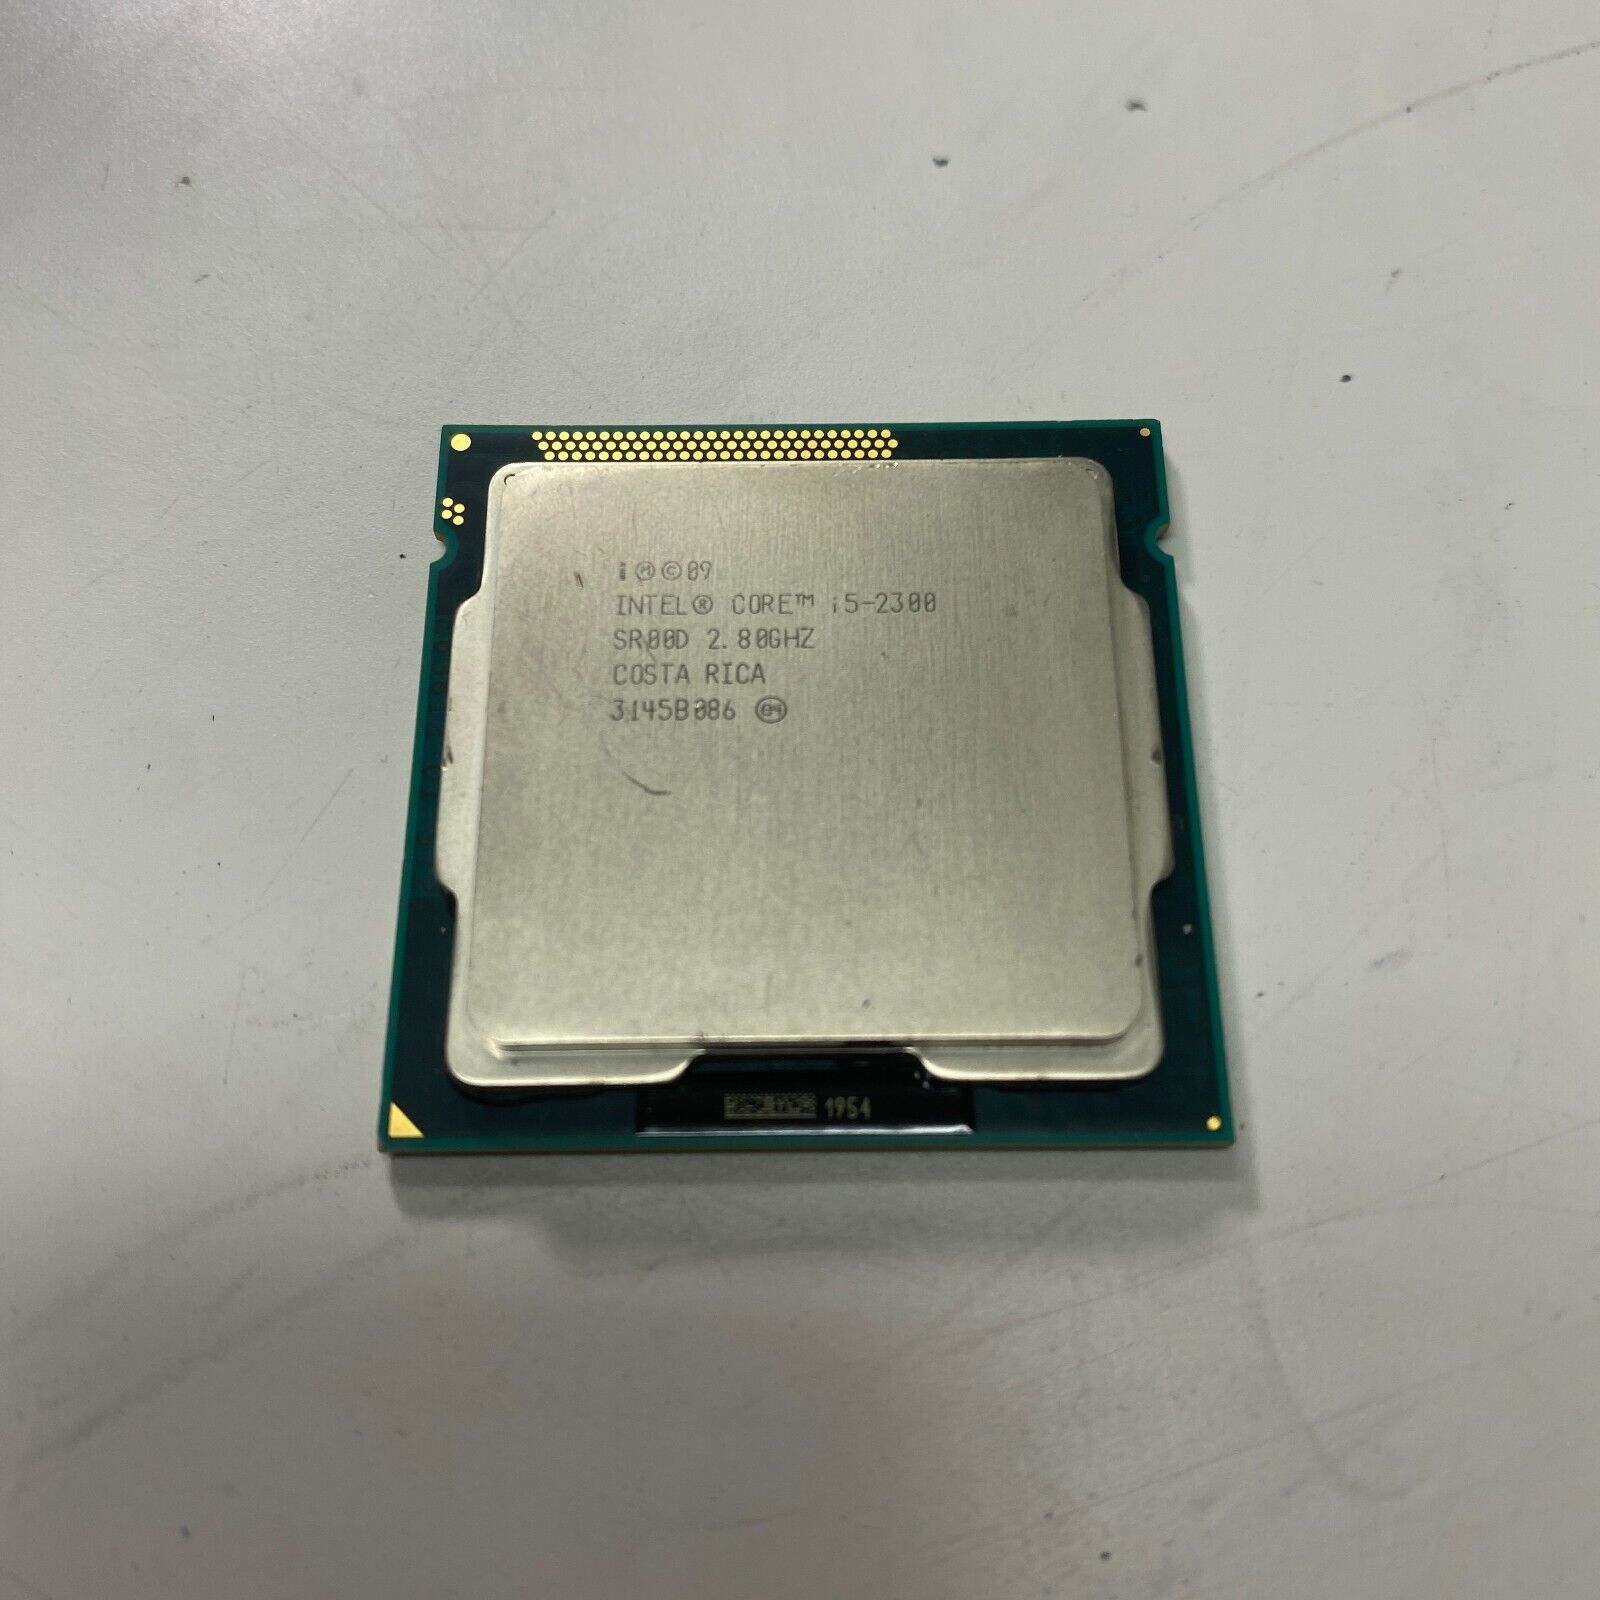 Intel Core i5-2300 SR00D 2.80Ghz LGA 1155 Quad Core Desktop CPU Processor